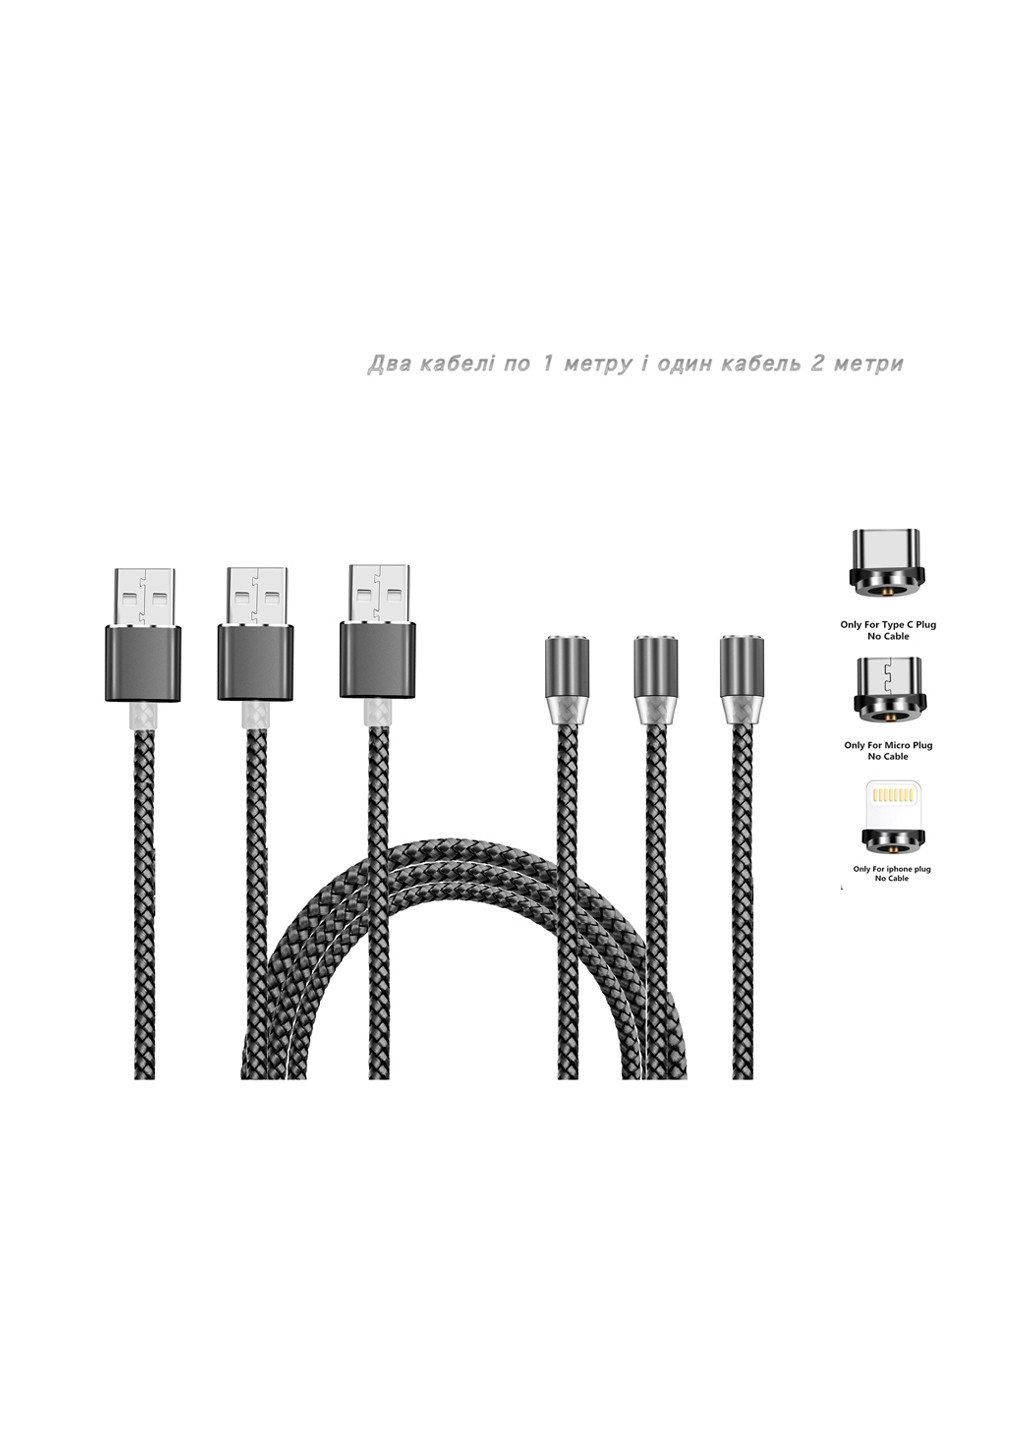 Набор магнитных кабелей USB SC-300 Magneto Grey - 3 в 1, 2х1 метр и 1х2 метра XoKo sc-300 набор магнитных кабелей usb (132572882)